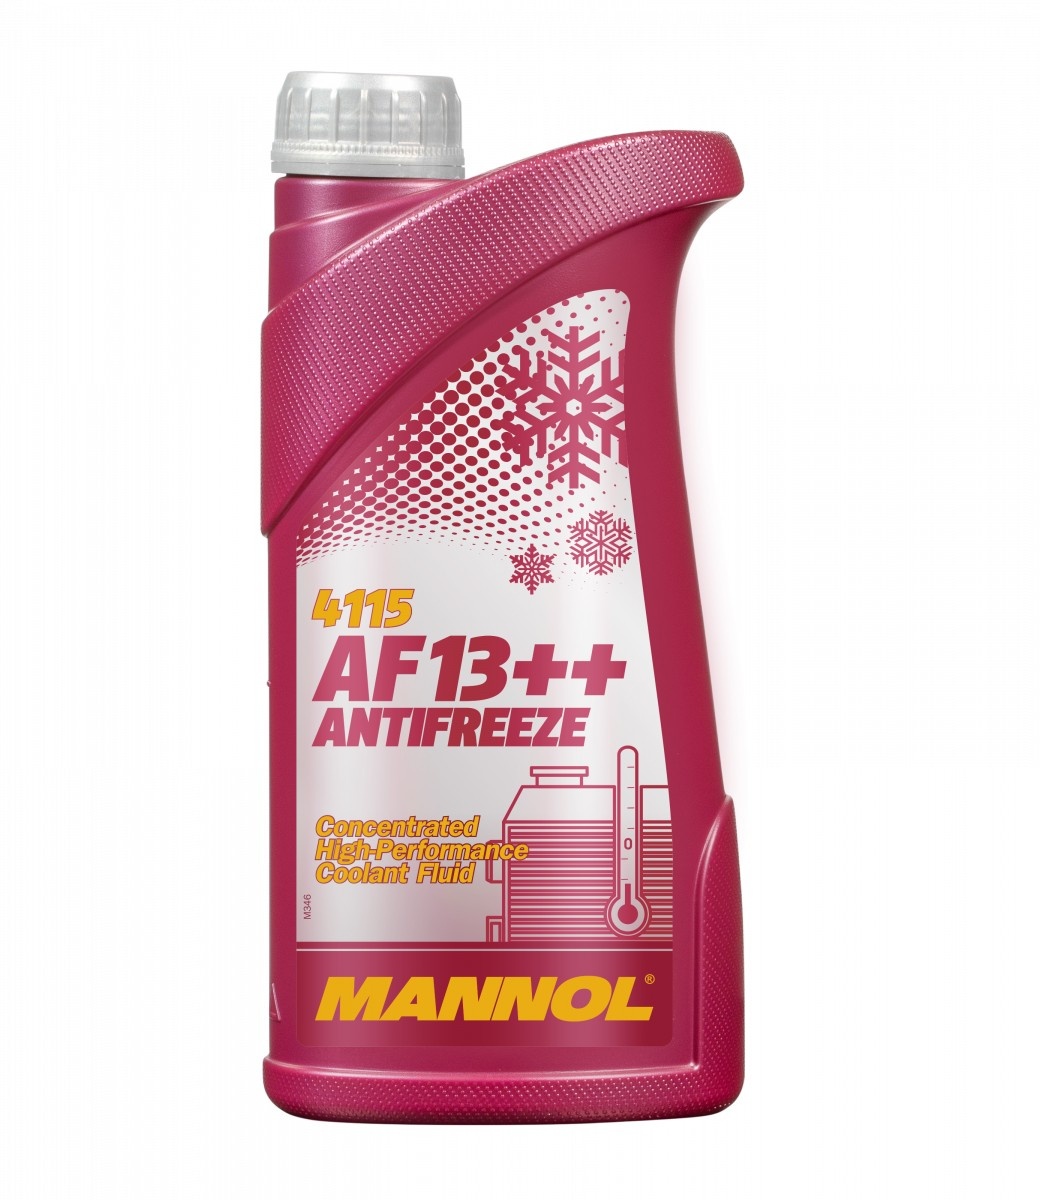 Antigel Mannol AF13++ Red 4115 1L